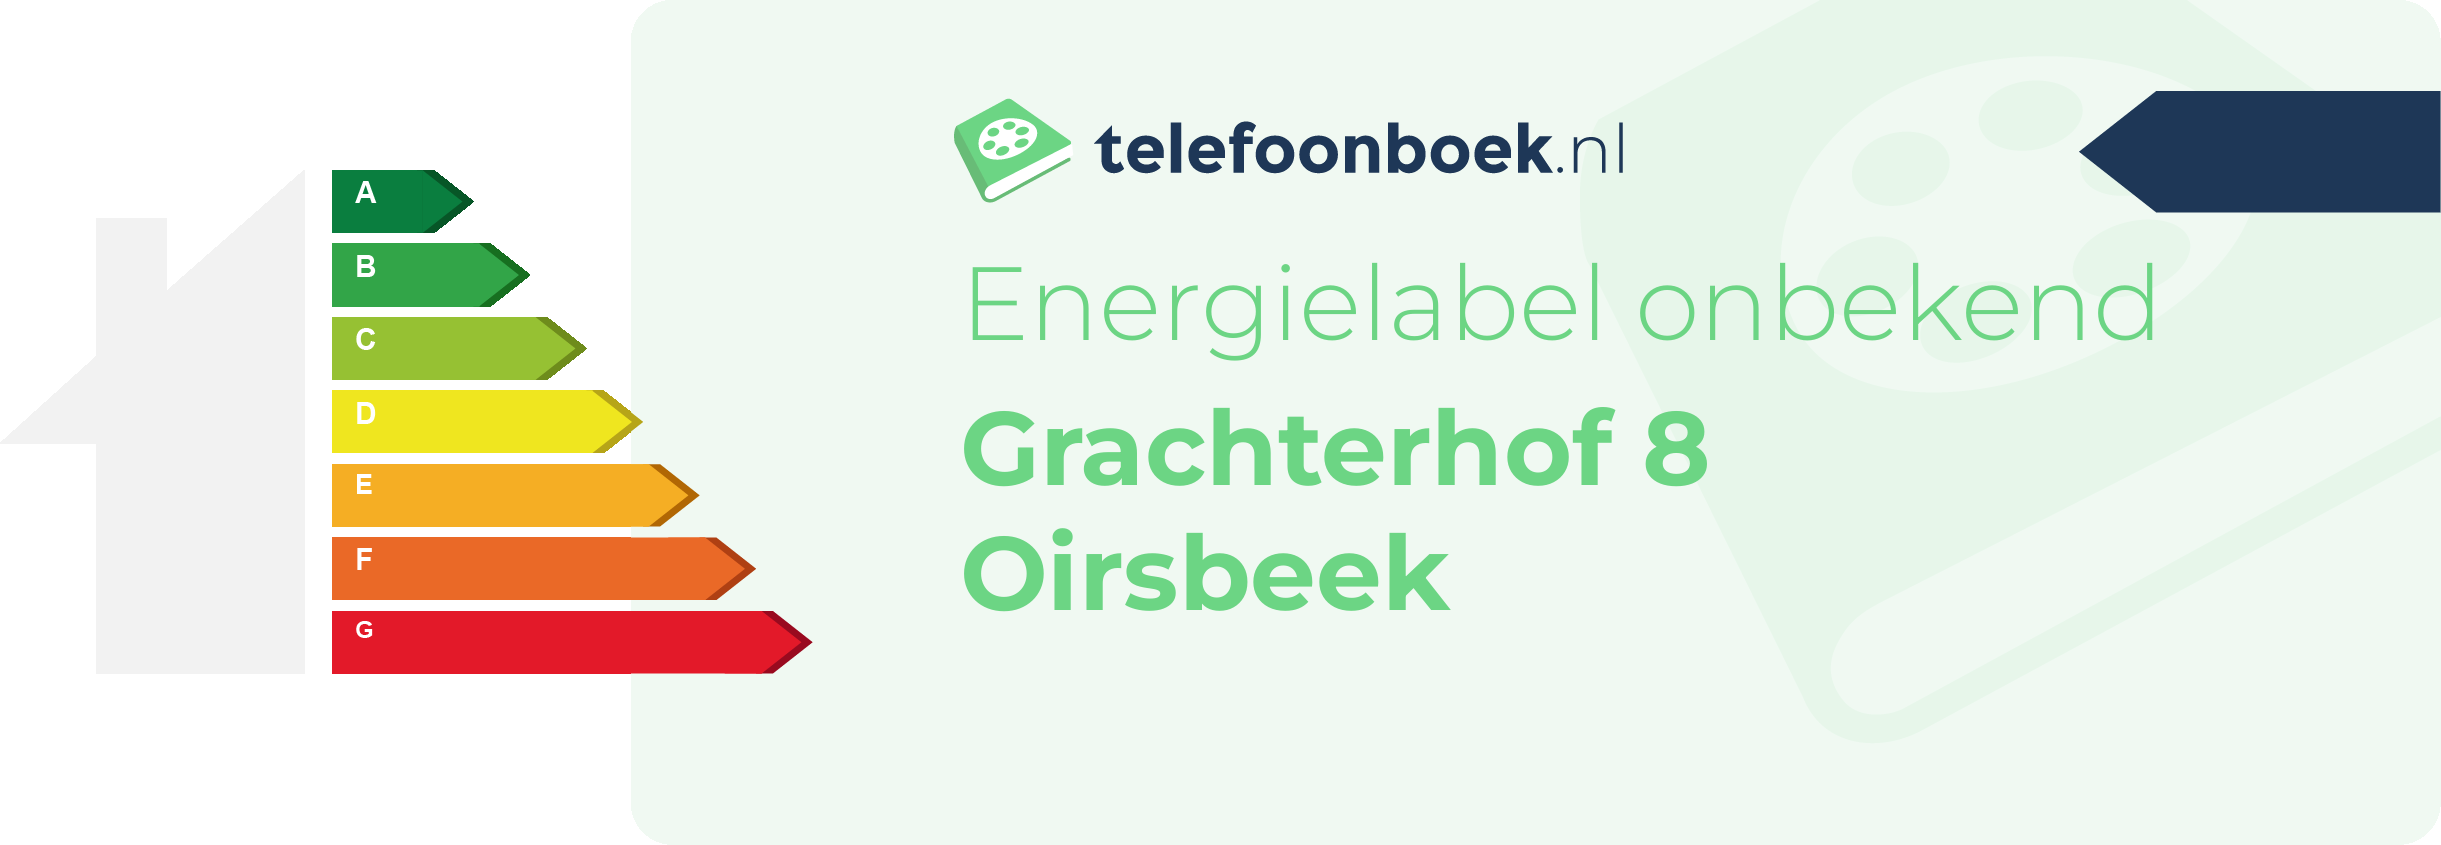 Energielabel Grachterhof 8 Oirsbeek